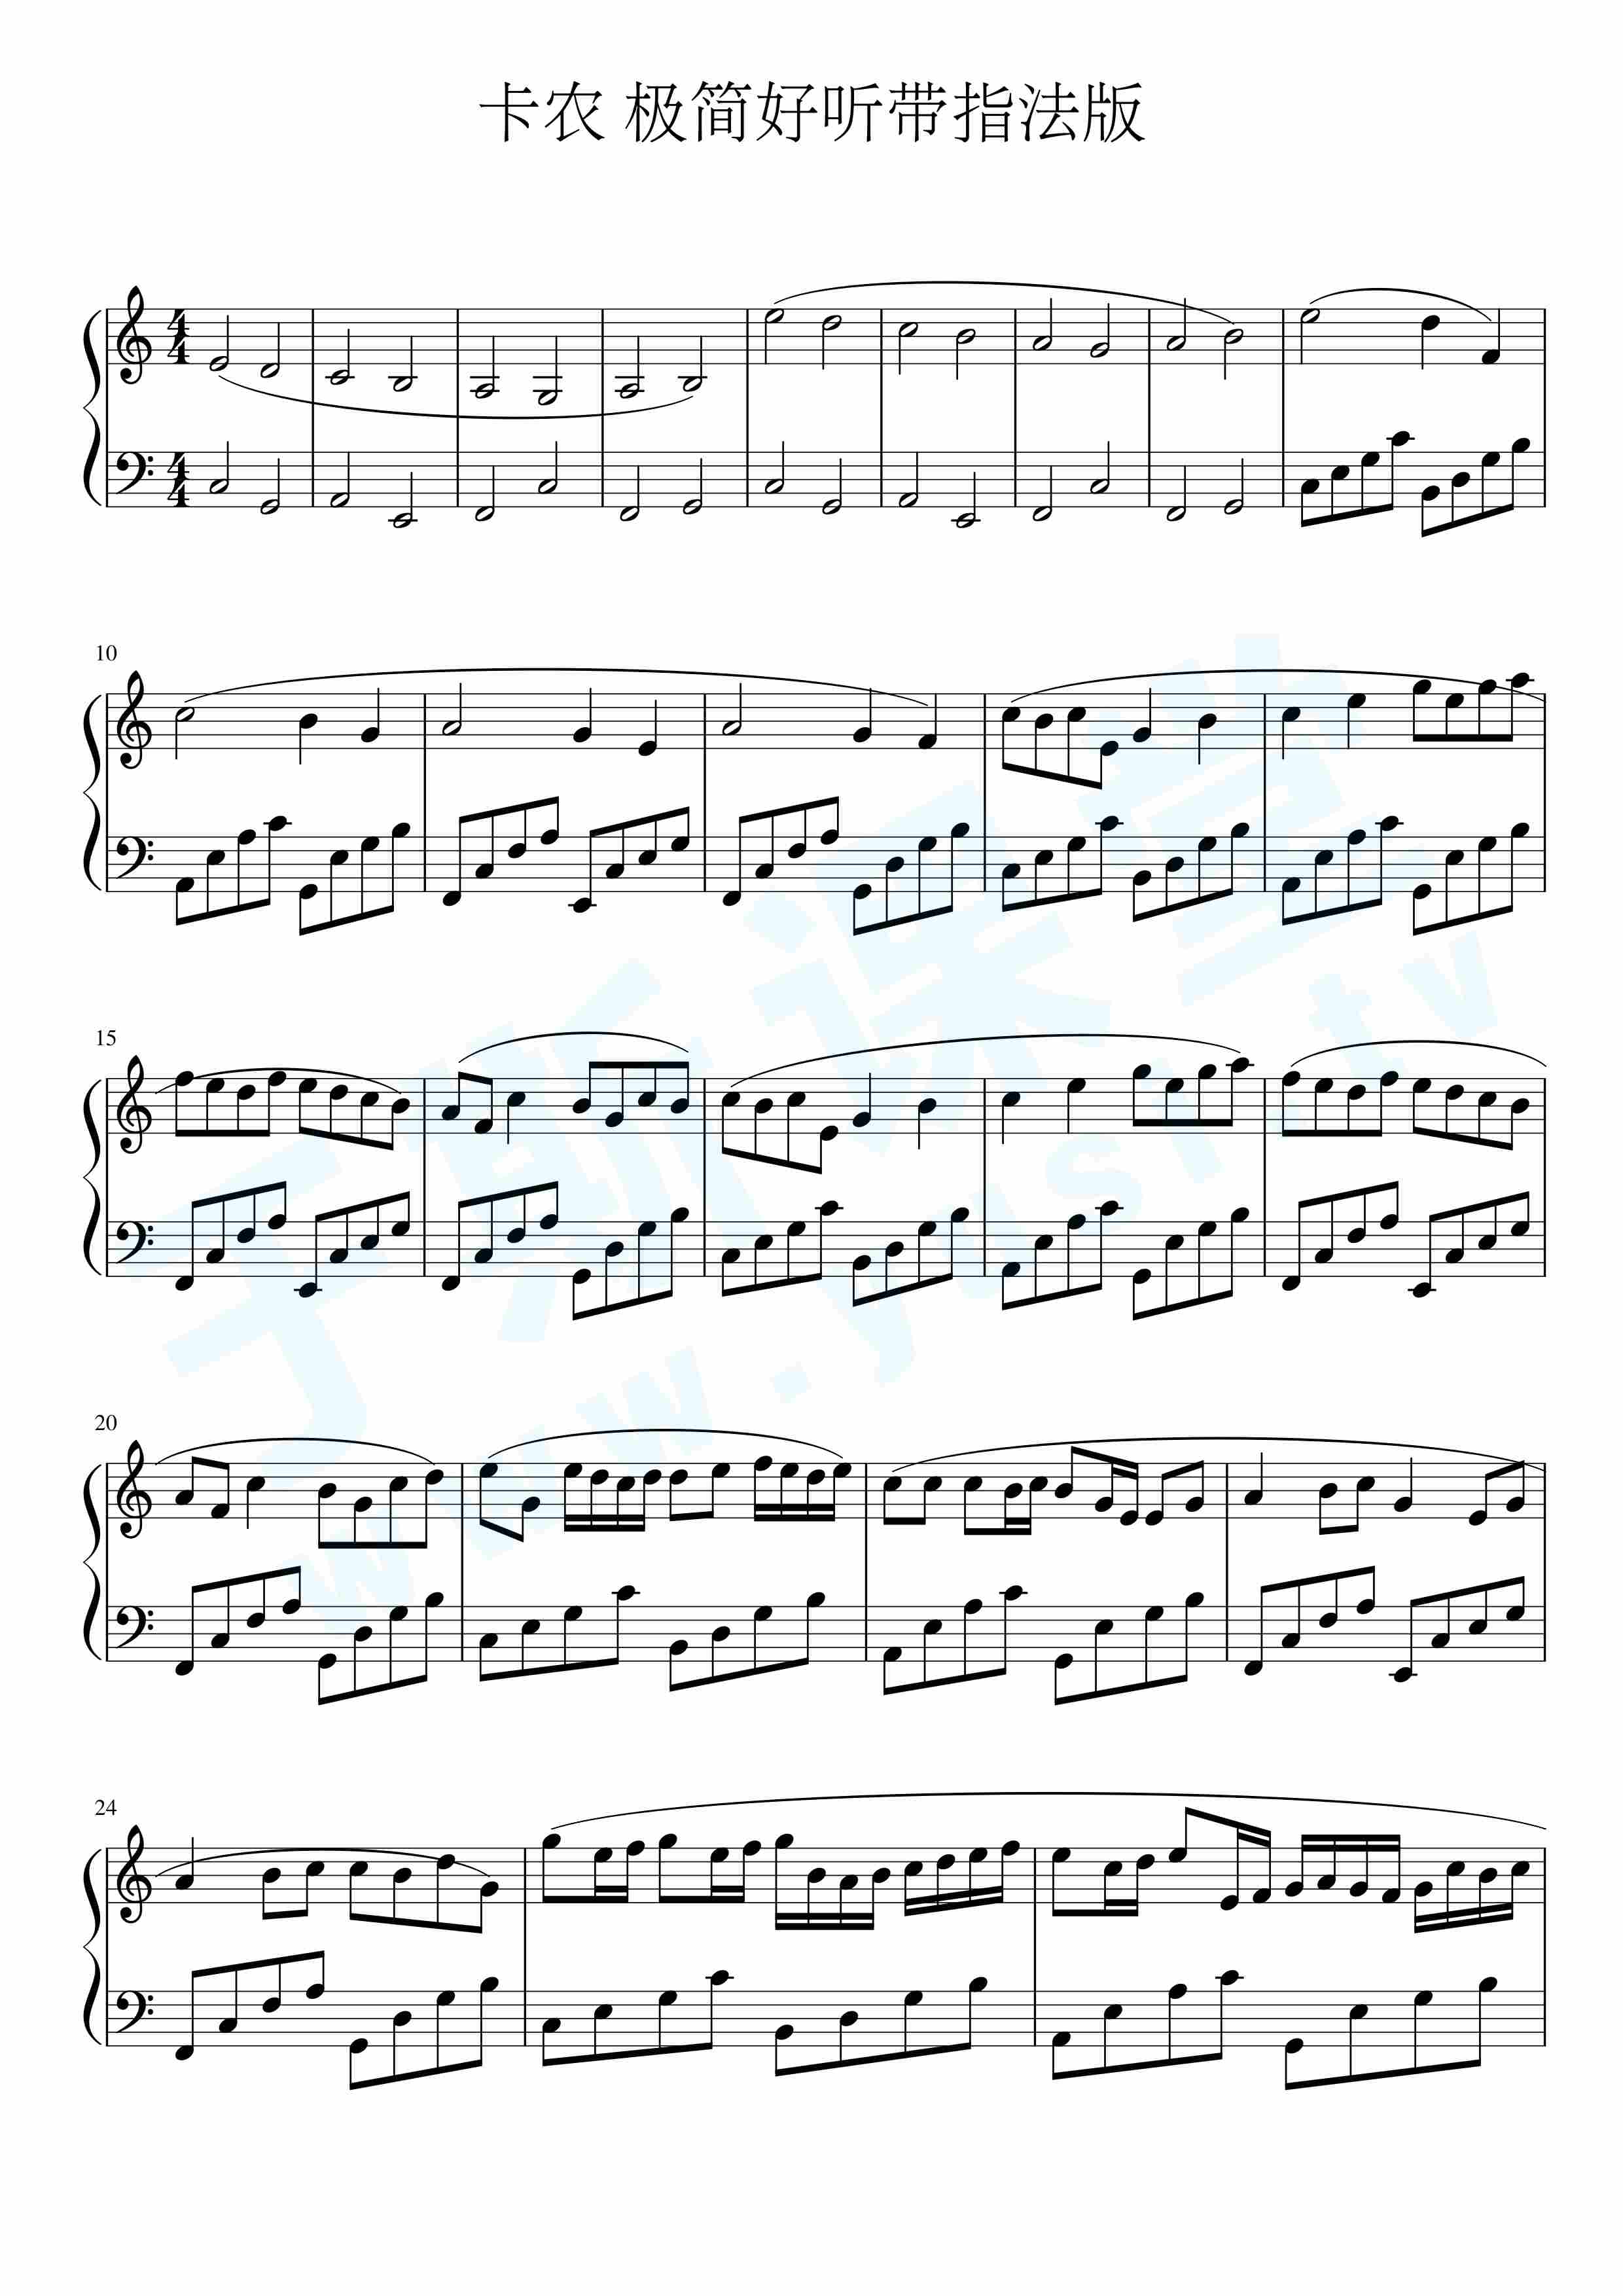 卡农钢琴谱 简化版图片